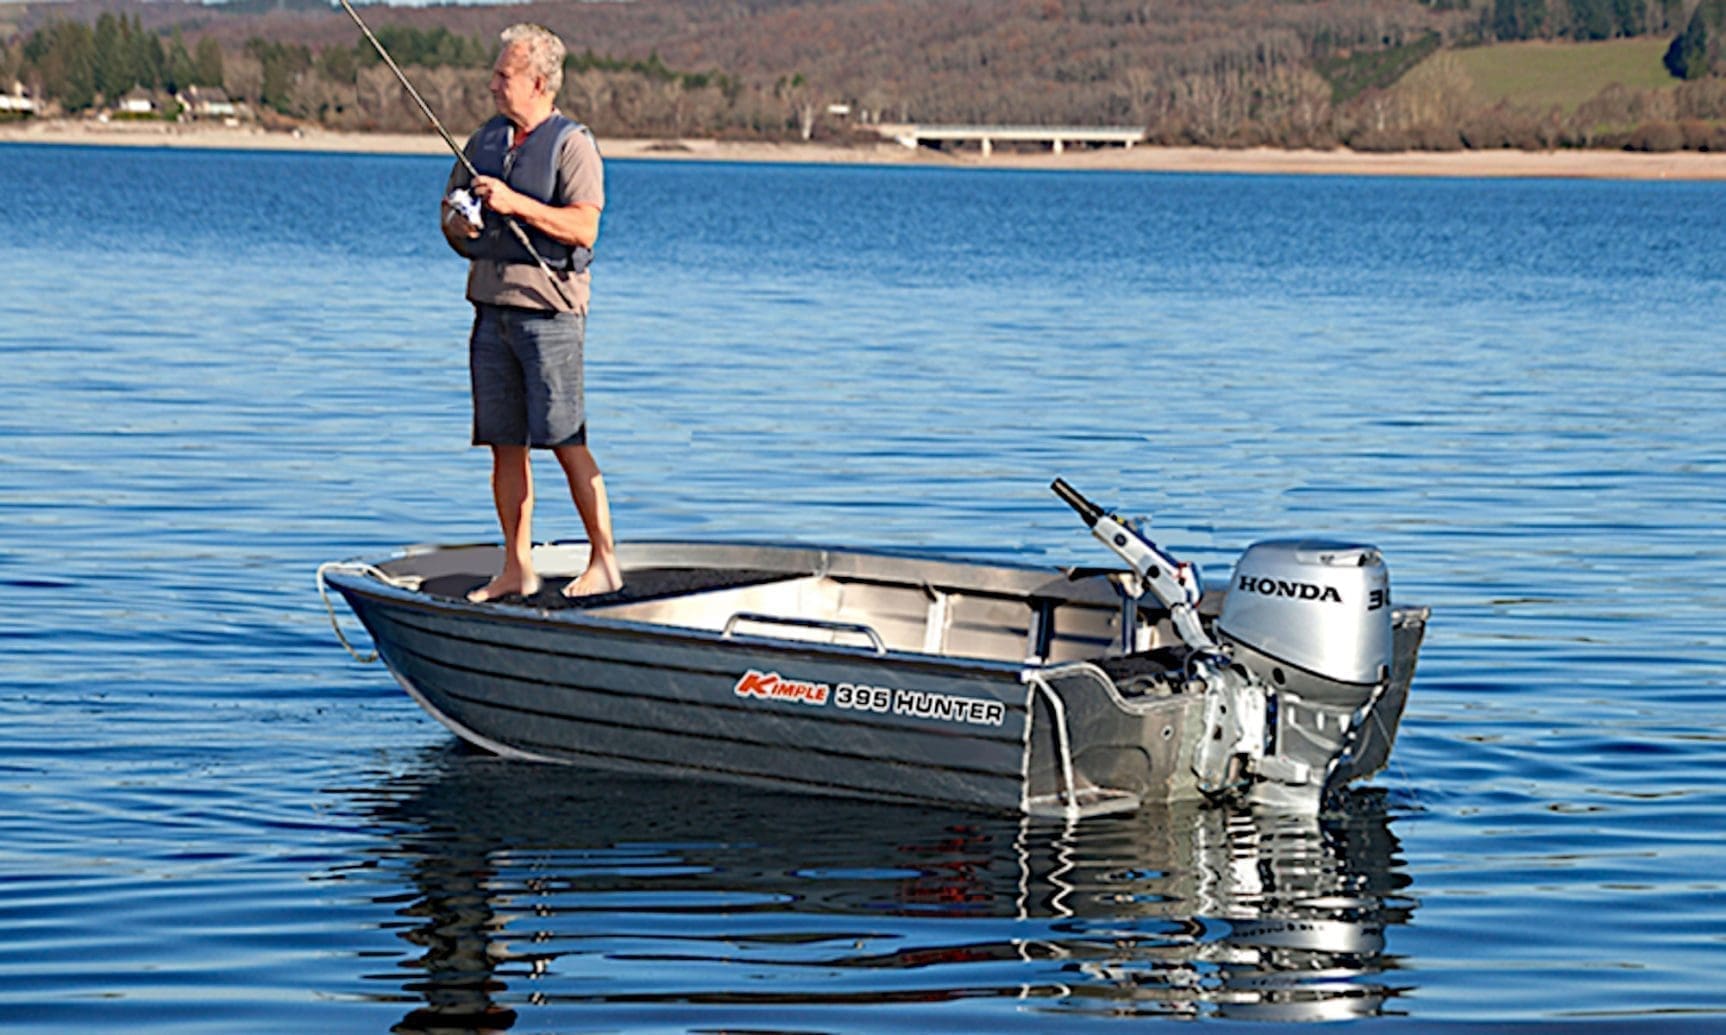 Kimple 395 Hunter är en bred och mycket stabil stabil och rymlig fiskebåt med kastdäck för den inbitne fiskaren. Den har en skrovform som effektivt trycker undan vattnet och gör båten extremt stabil och lättplanad.